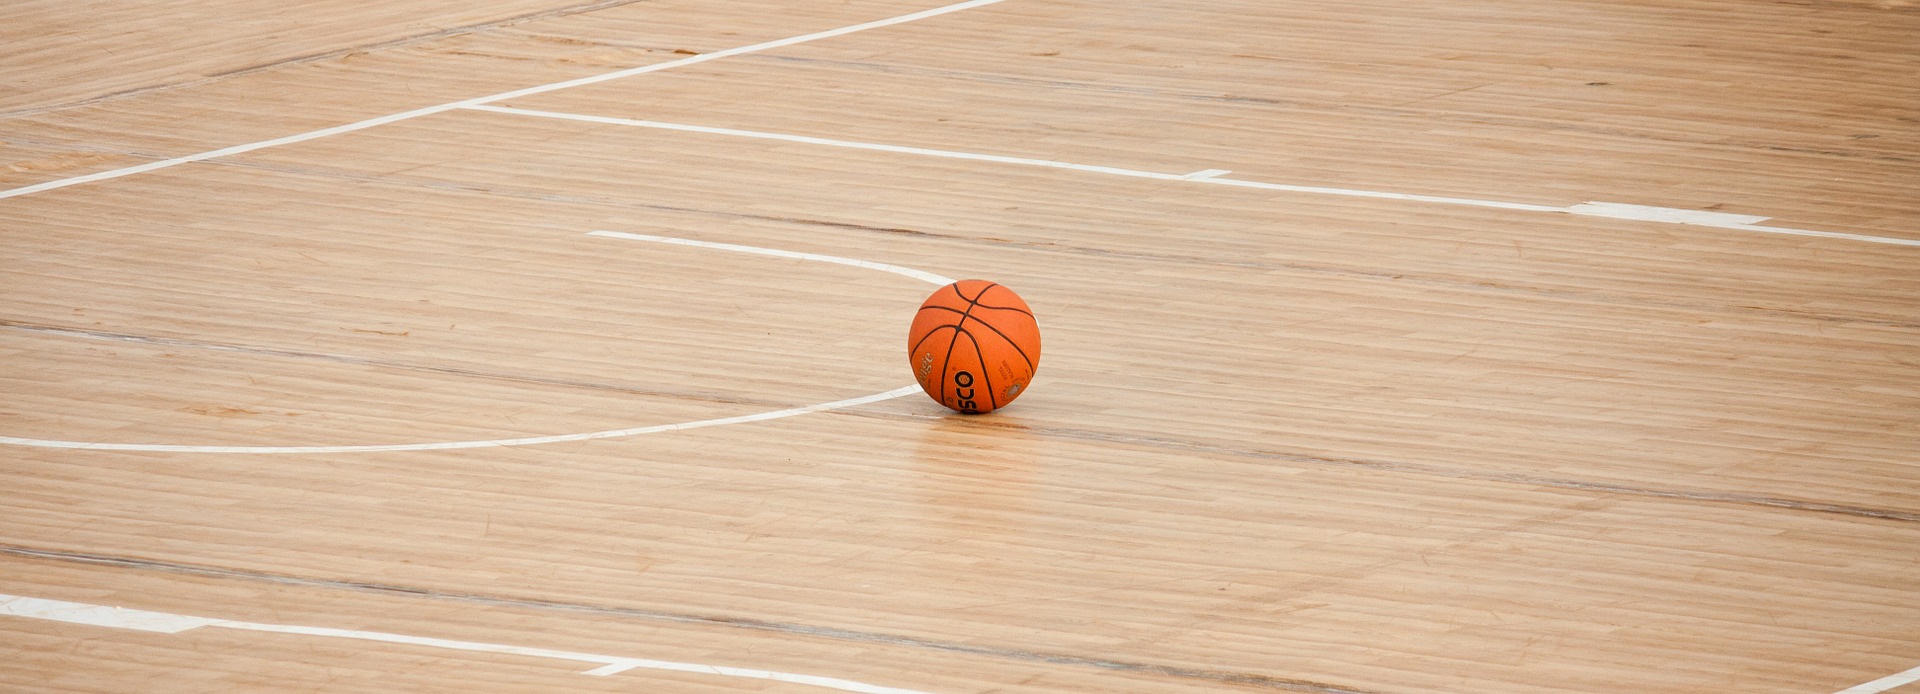 basketball on hardwood floor gym